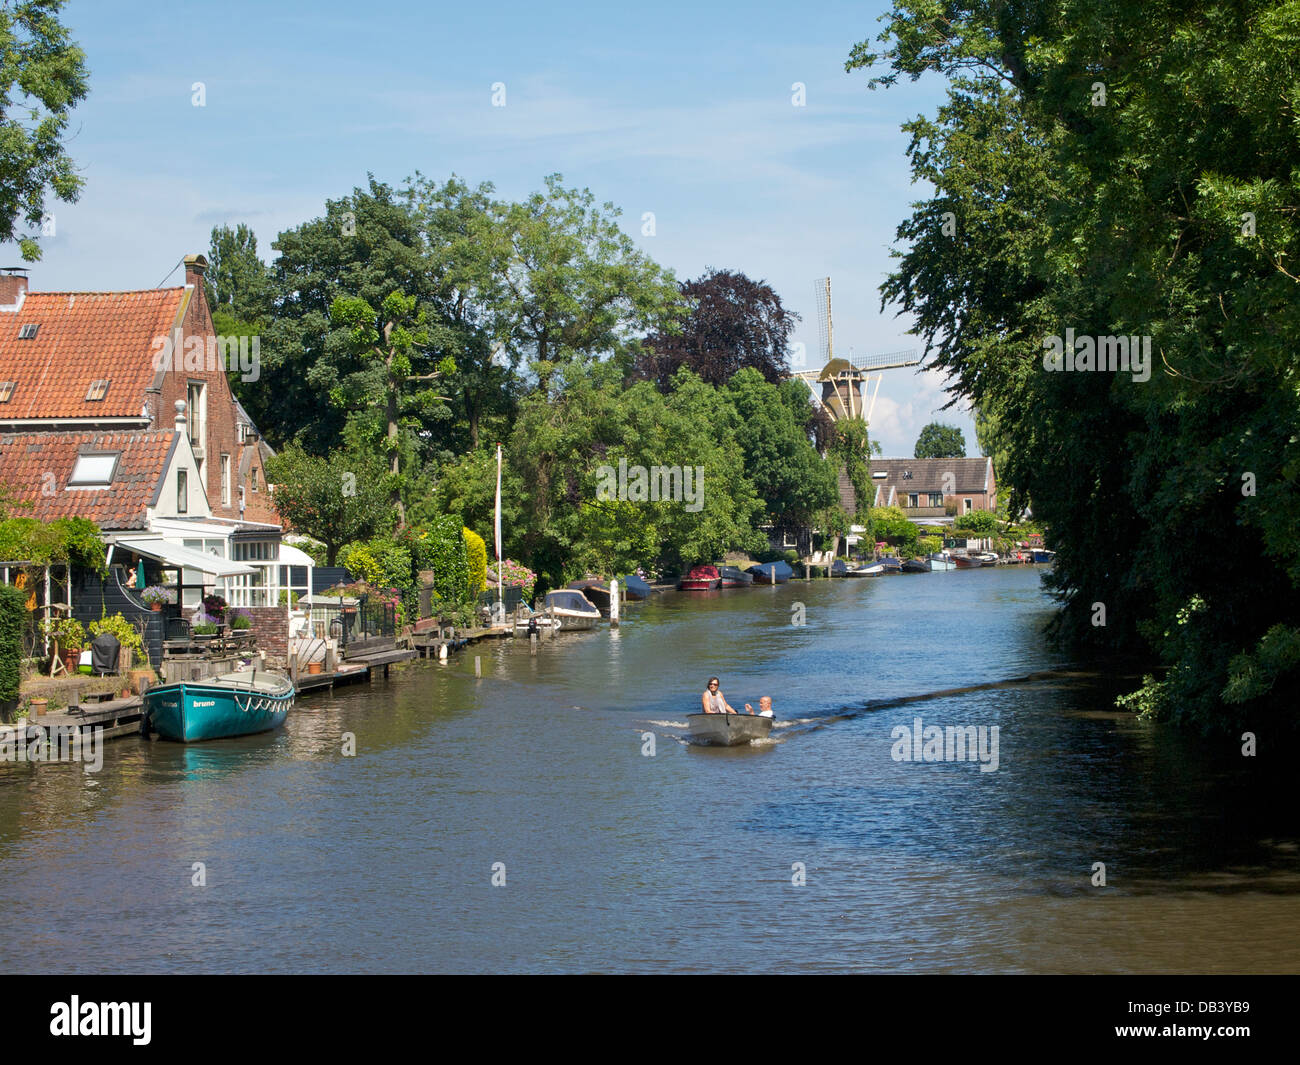 Idillica Scena di fiume in LOENEN AAN DE VECHT, Utrecht, Paesi Bassi, una delle più belle regioni del paese. Foto Stock